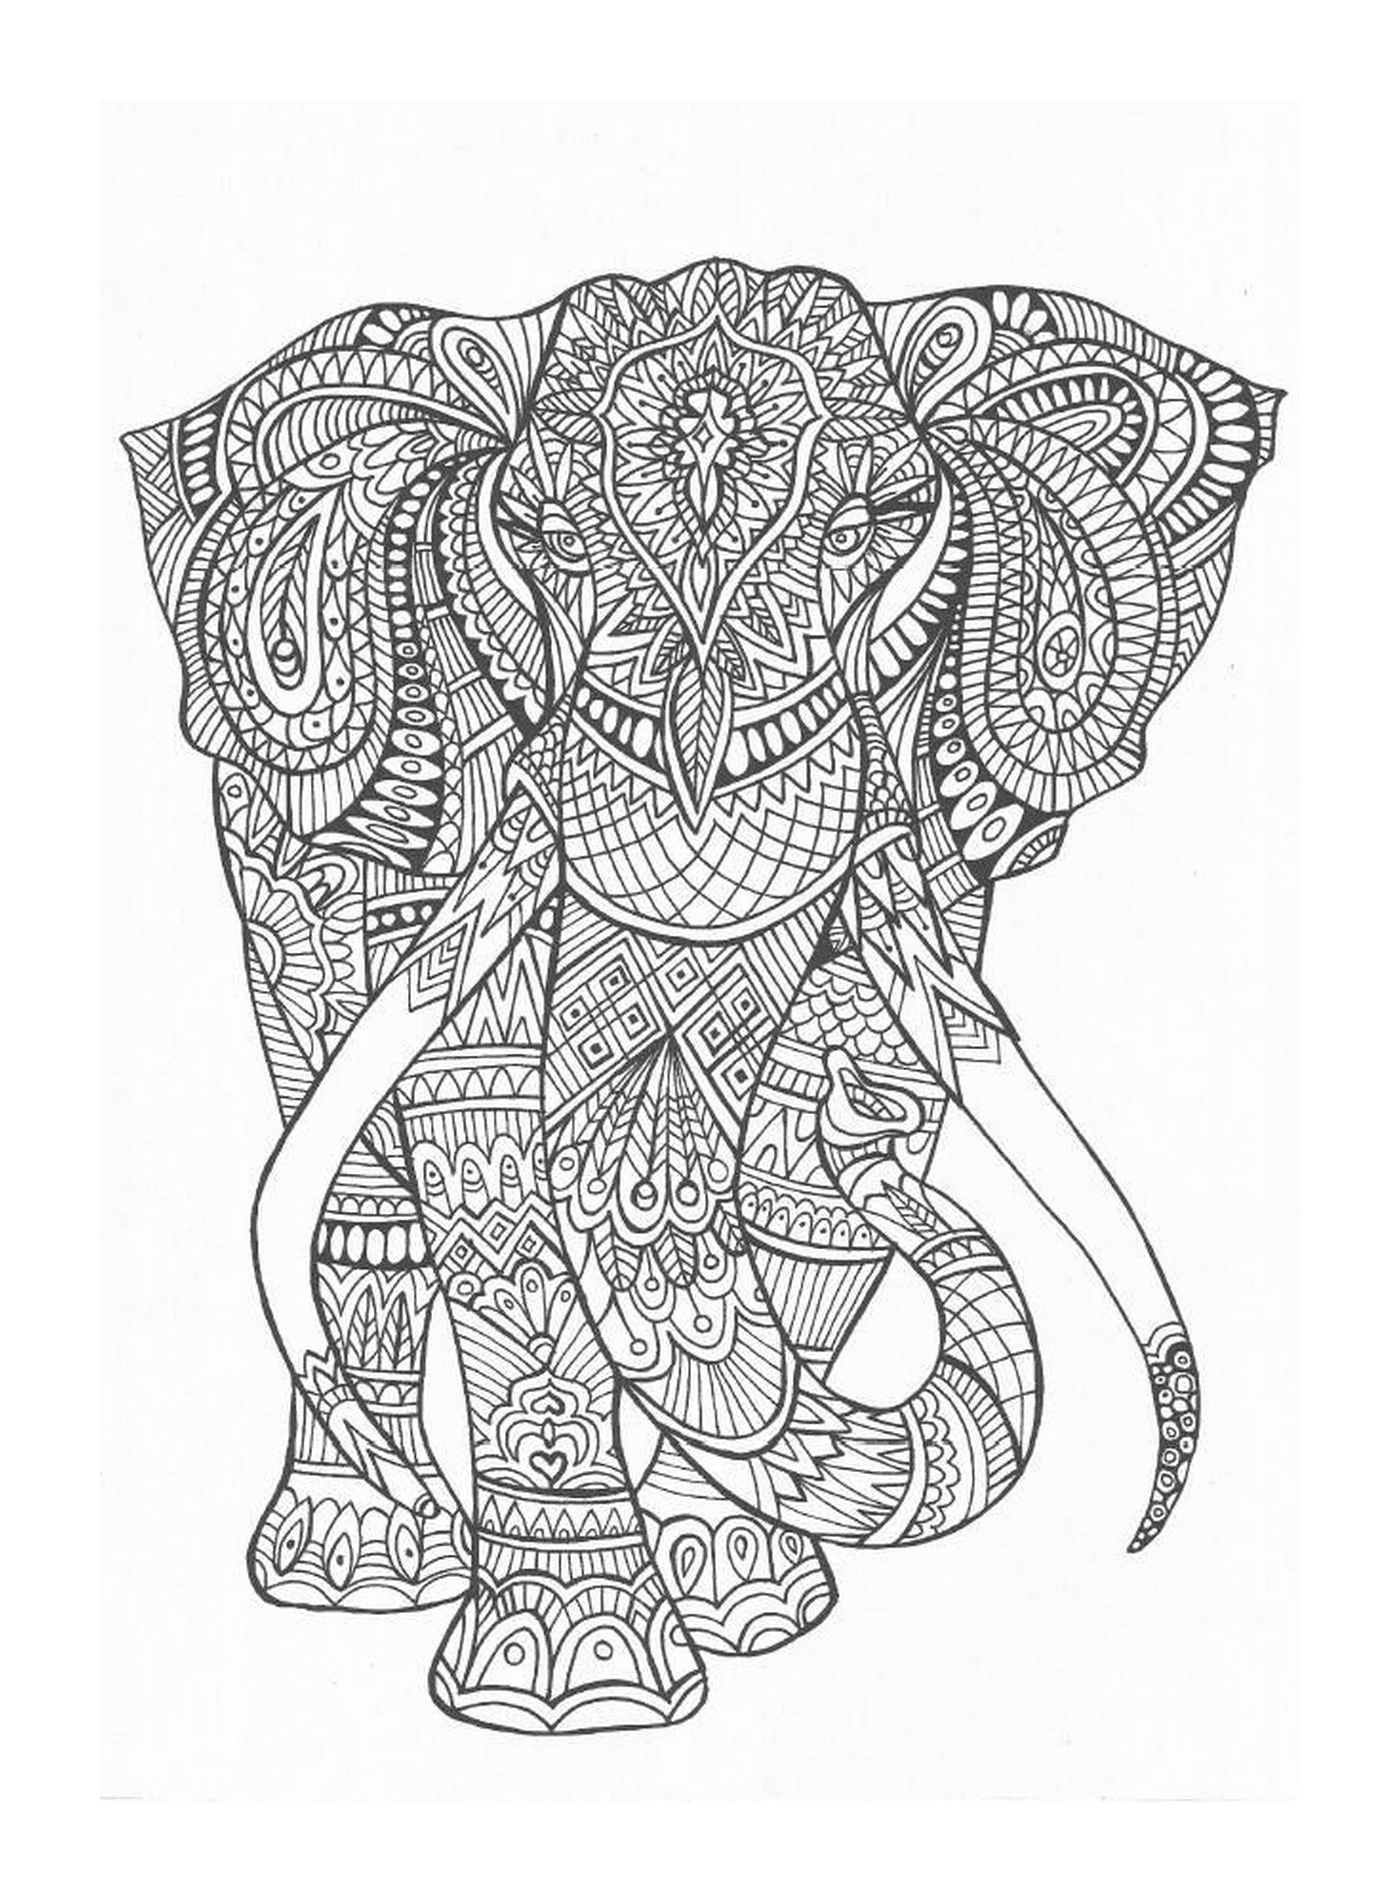  हाथी की सजावट 